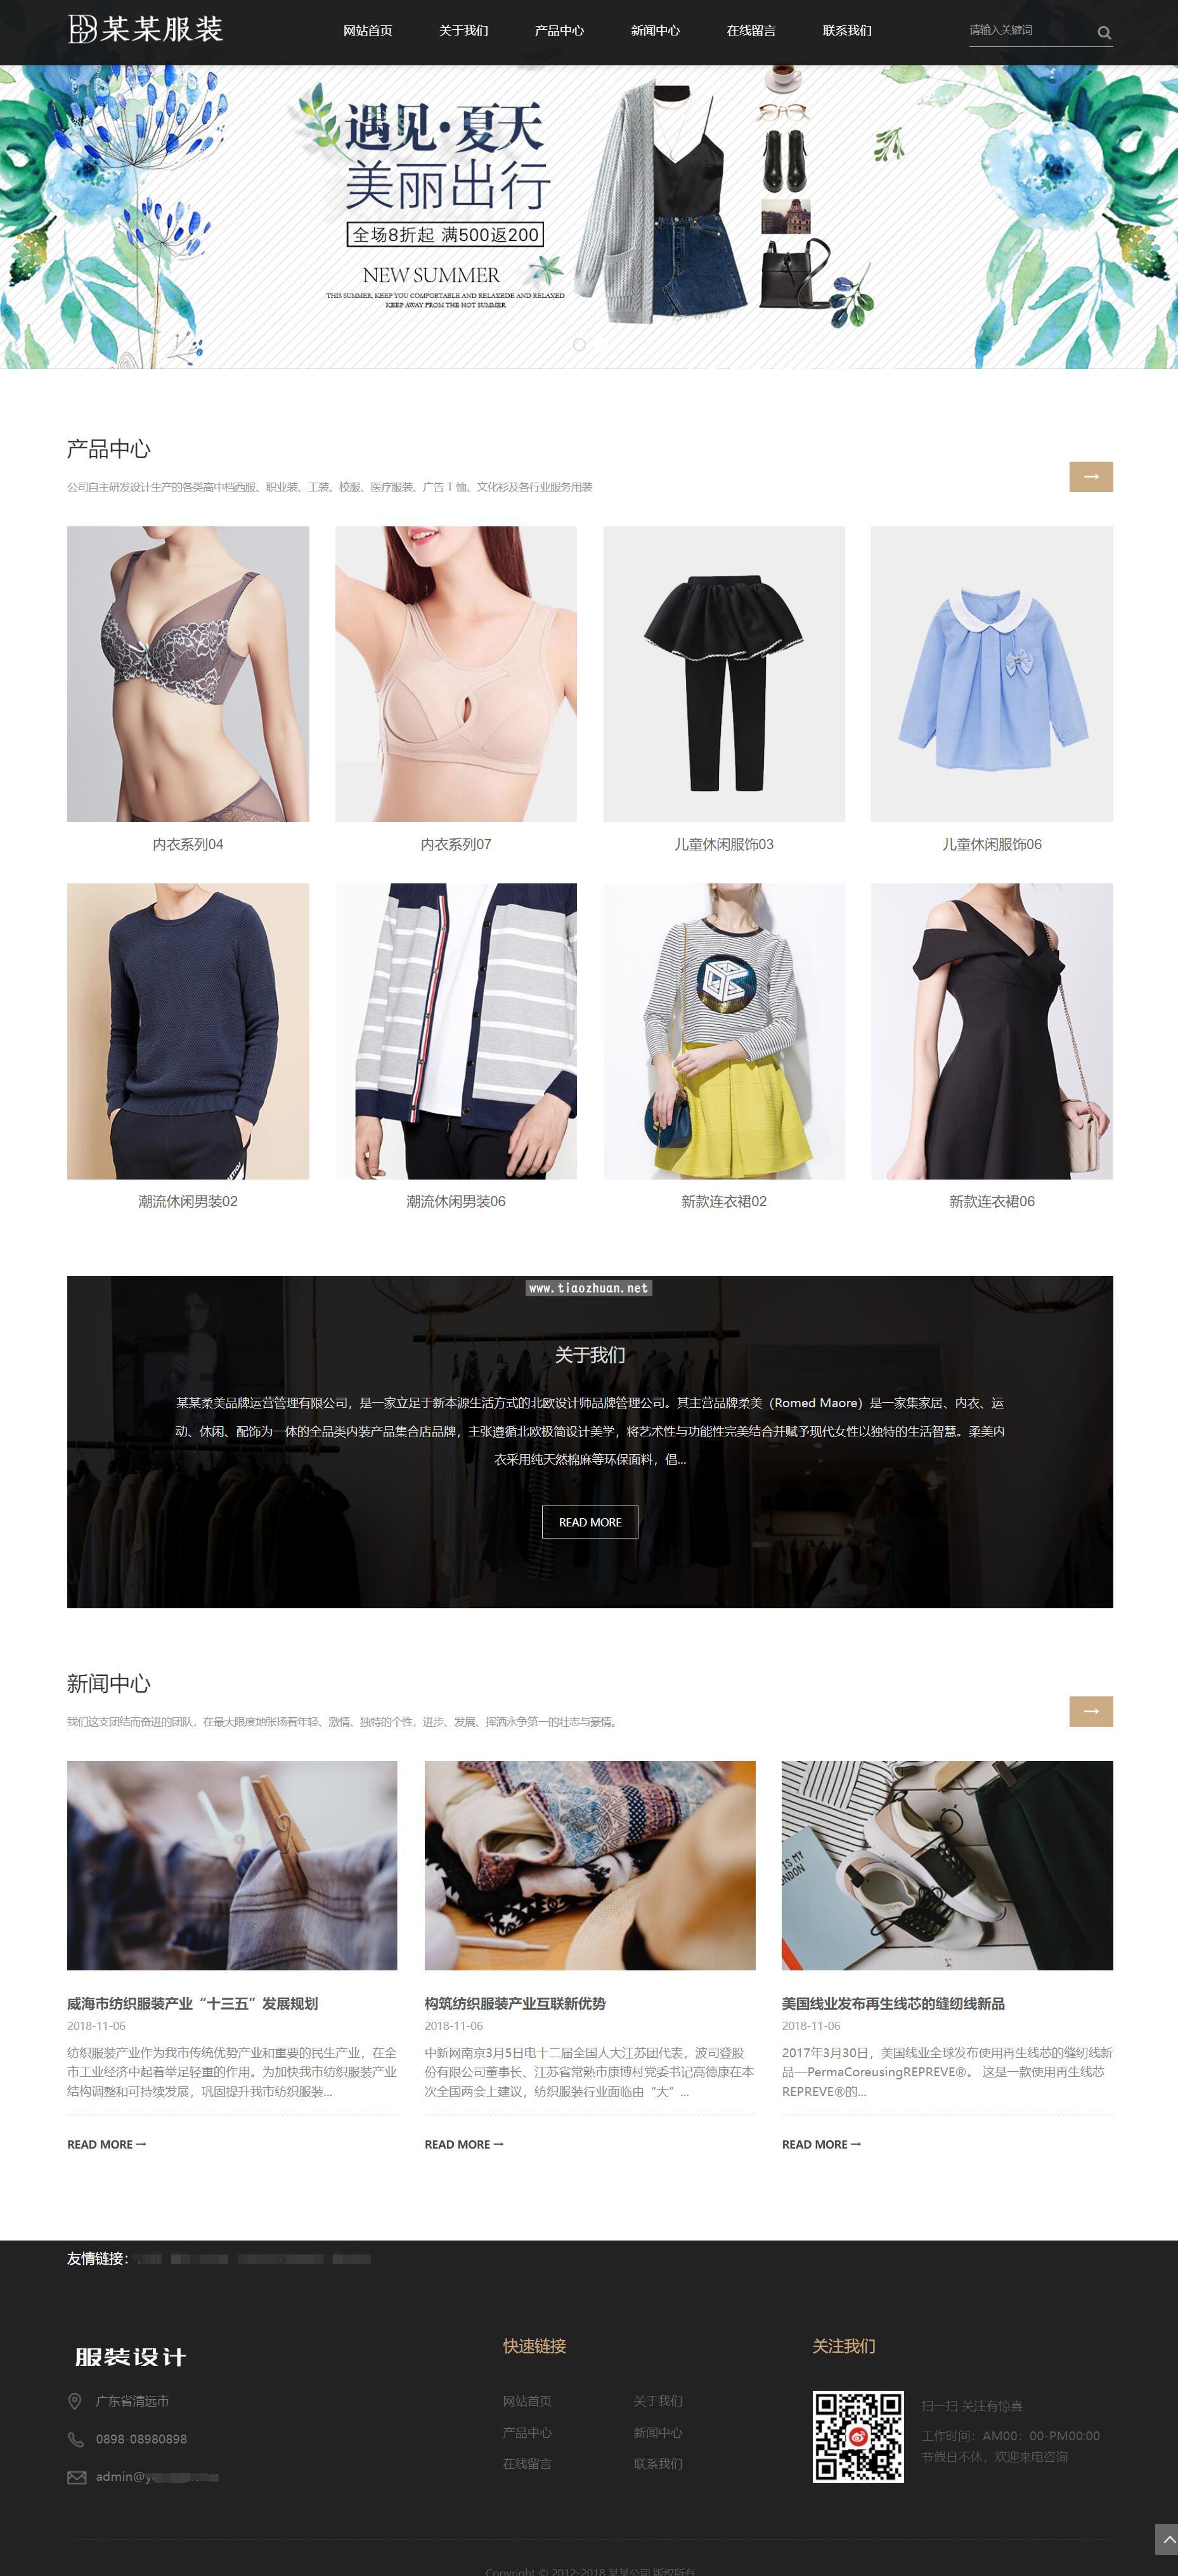 服装设计模板,服装厂商网站原下载